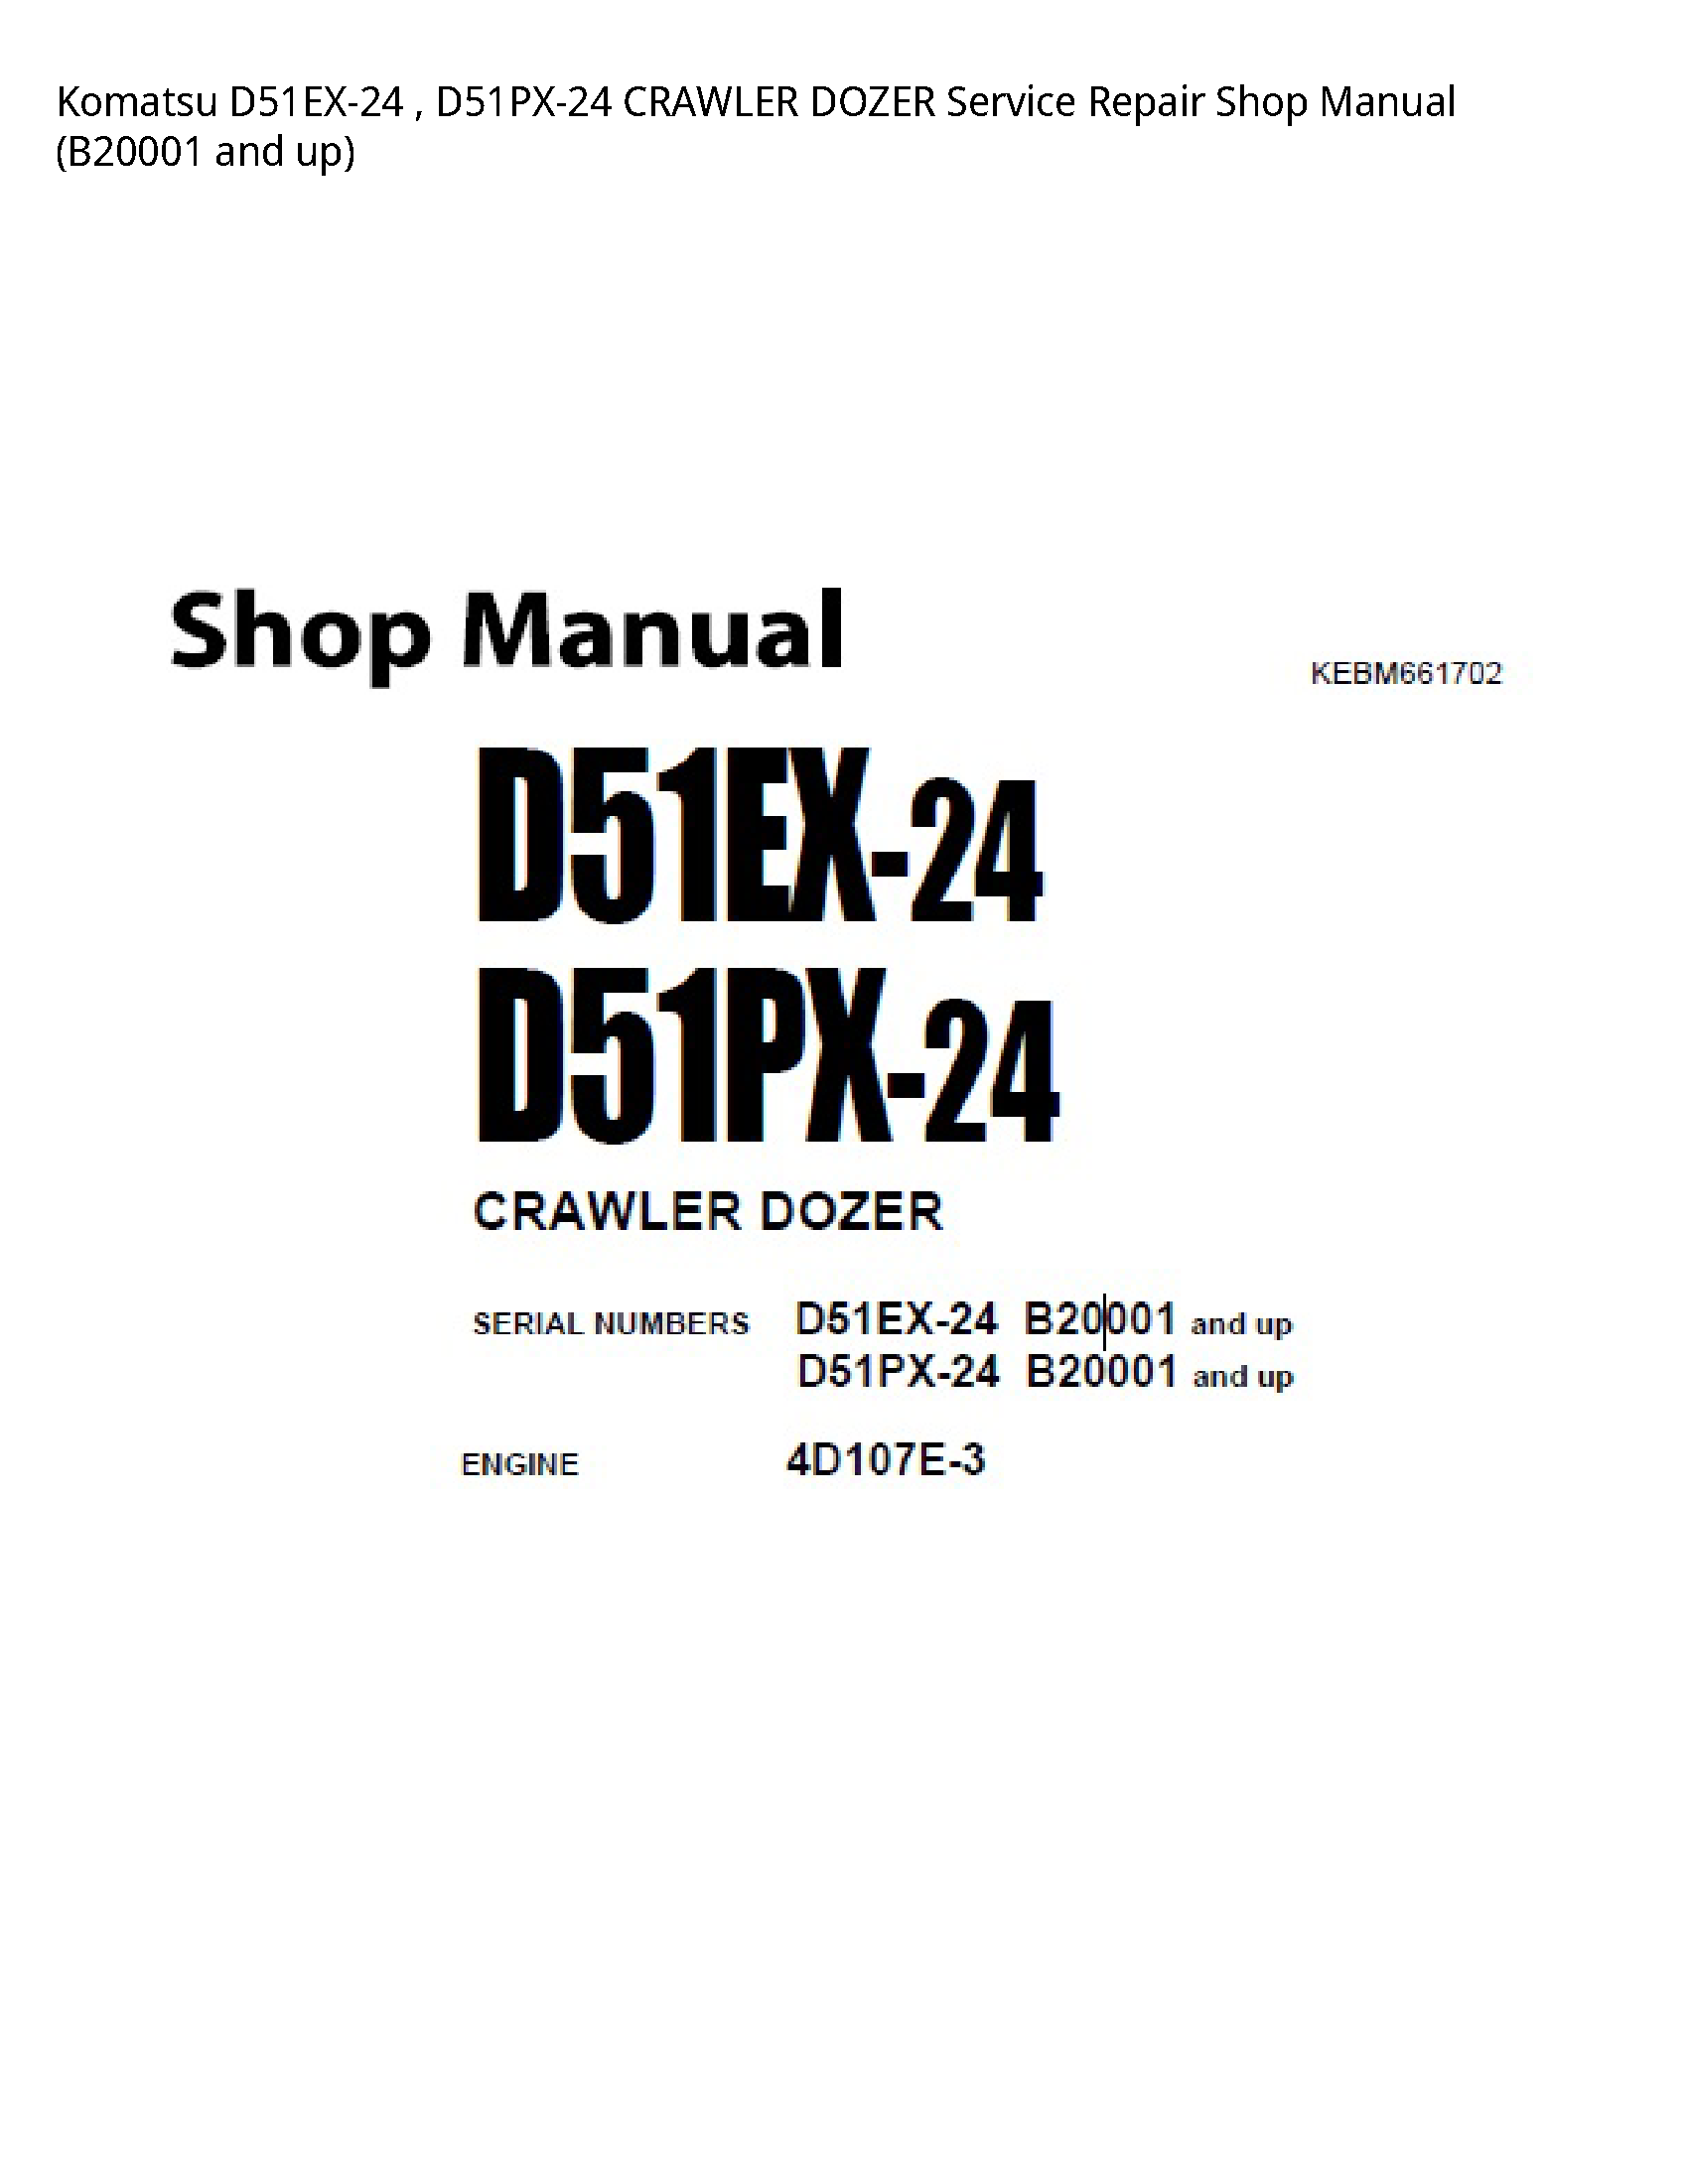 KOMATSU D51EX-24 CRAWLER DOZER manual